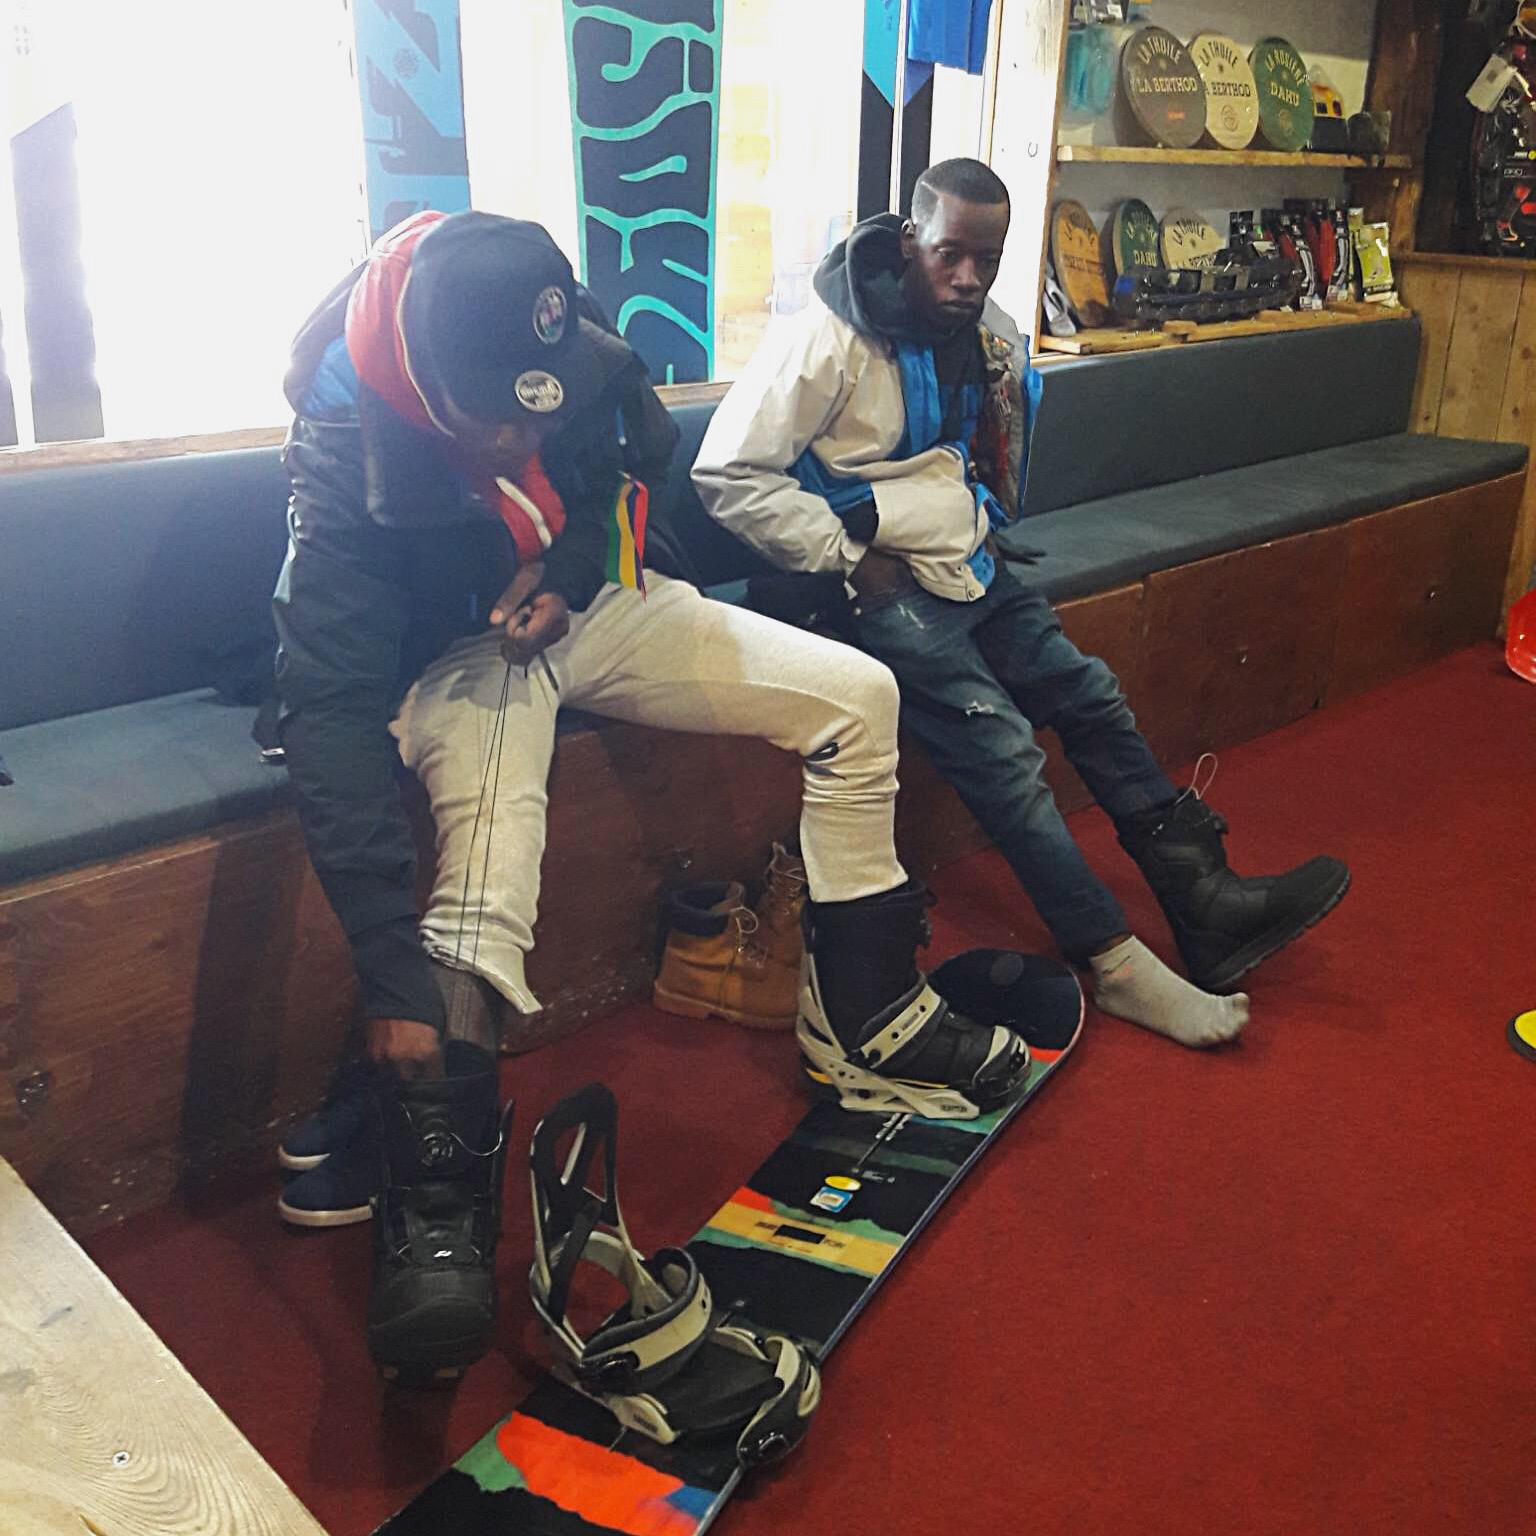 Séance d’essai des chaussures de Snowboard